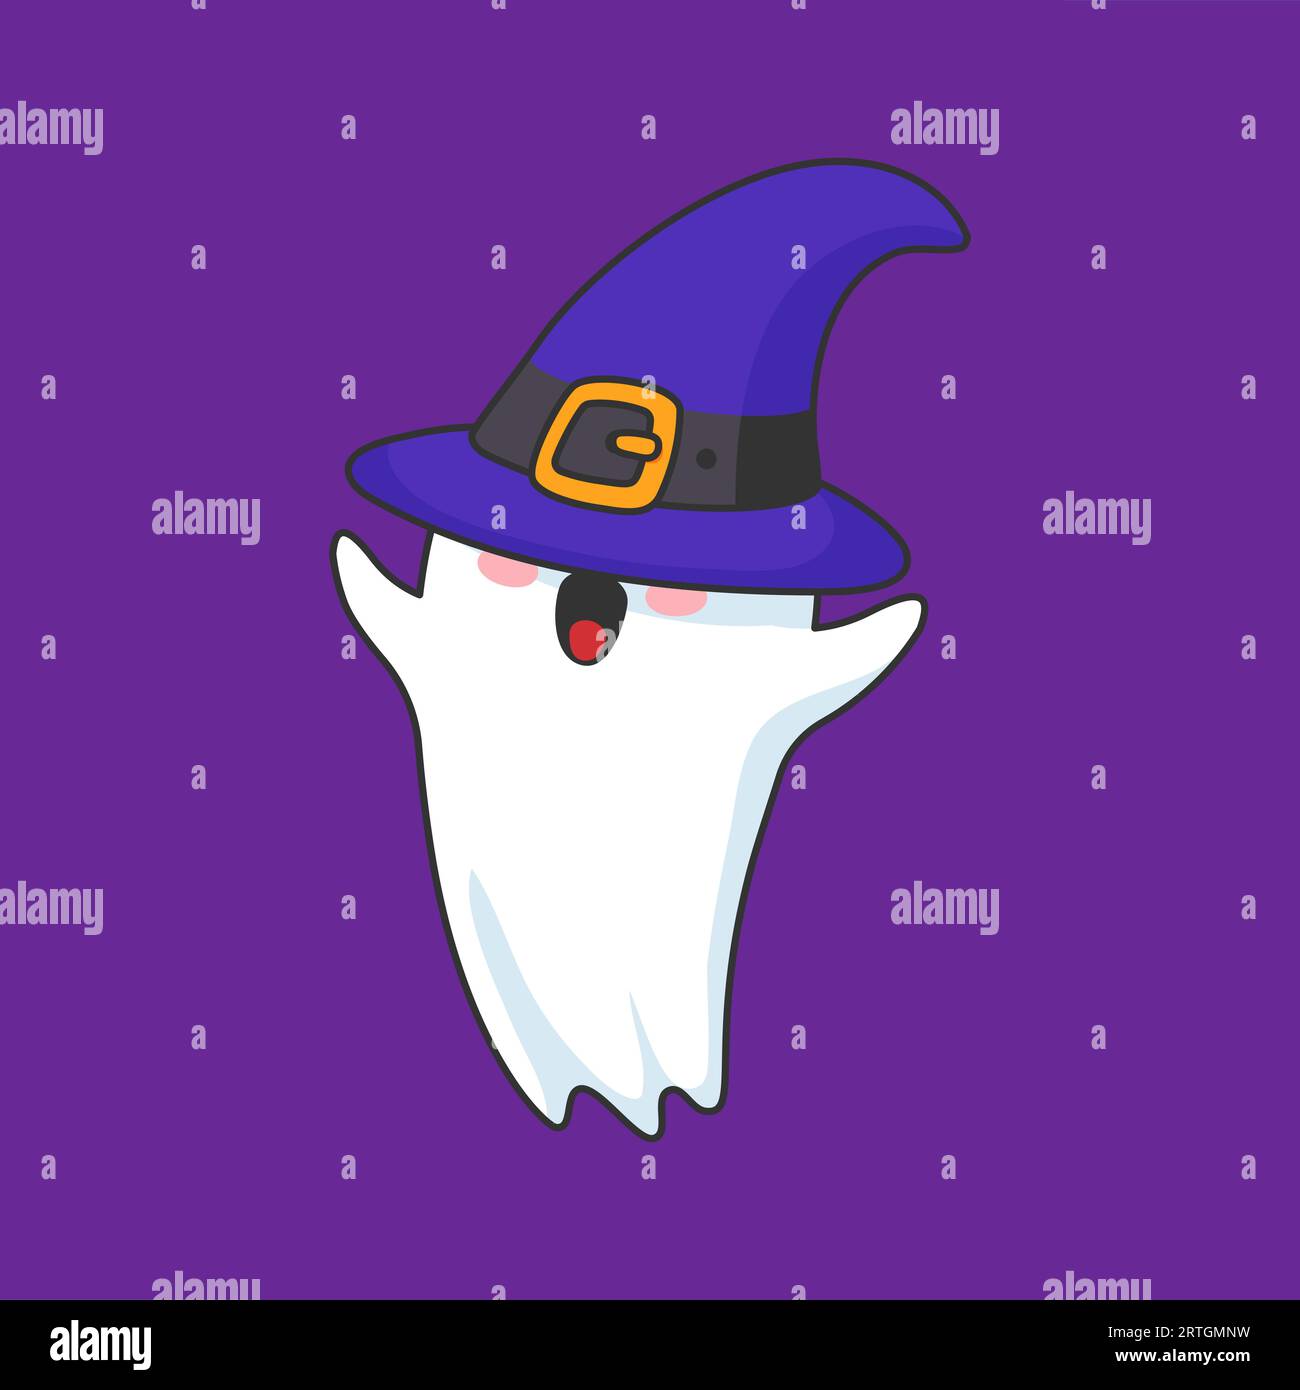 Il personaggio fantasma di Halloween kawaii dei cartoni animati indossa un cappello a punta da strega. Un simpatico gioiello vettoriale isolato in un cappello oversize che chiude gli occhi, con emozioni giocose, mentre prova l'abbigliamento natalizio durante la stagione spettrale Illustrazione Vettoriale